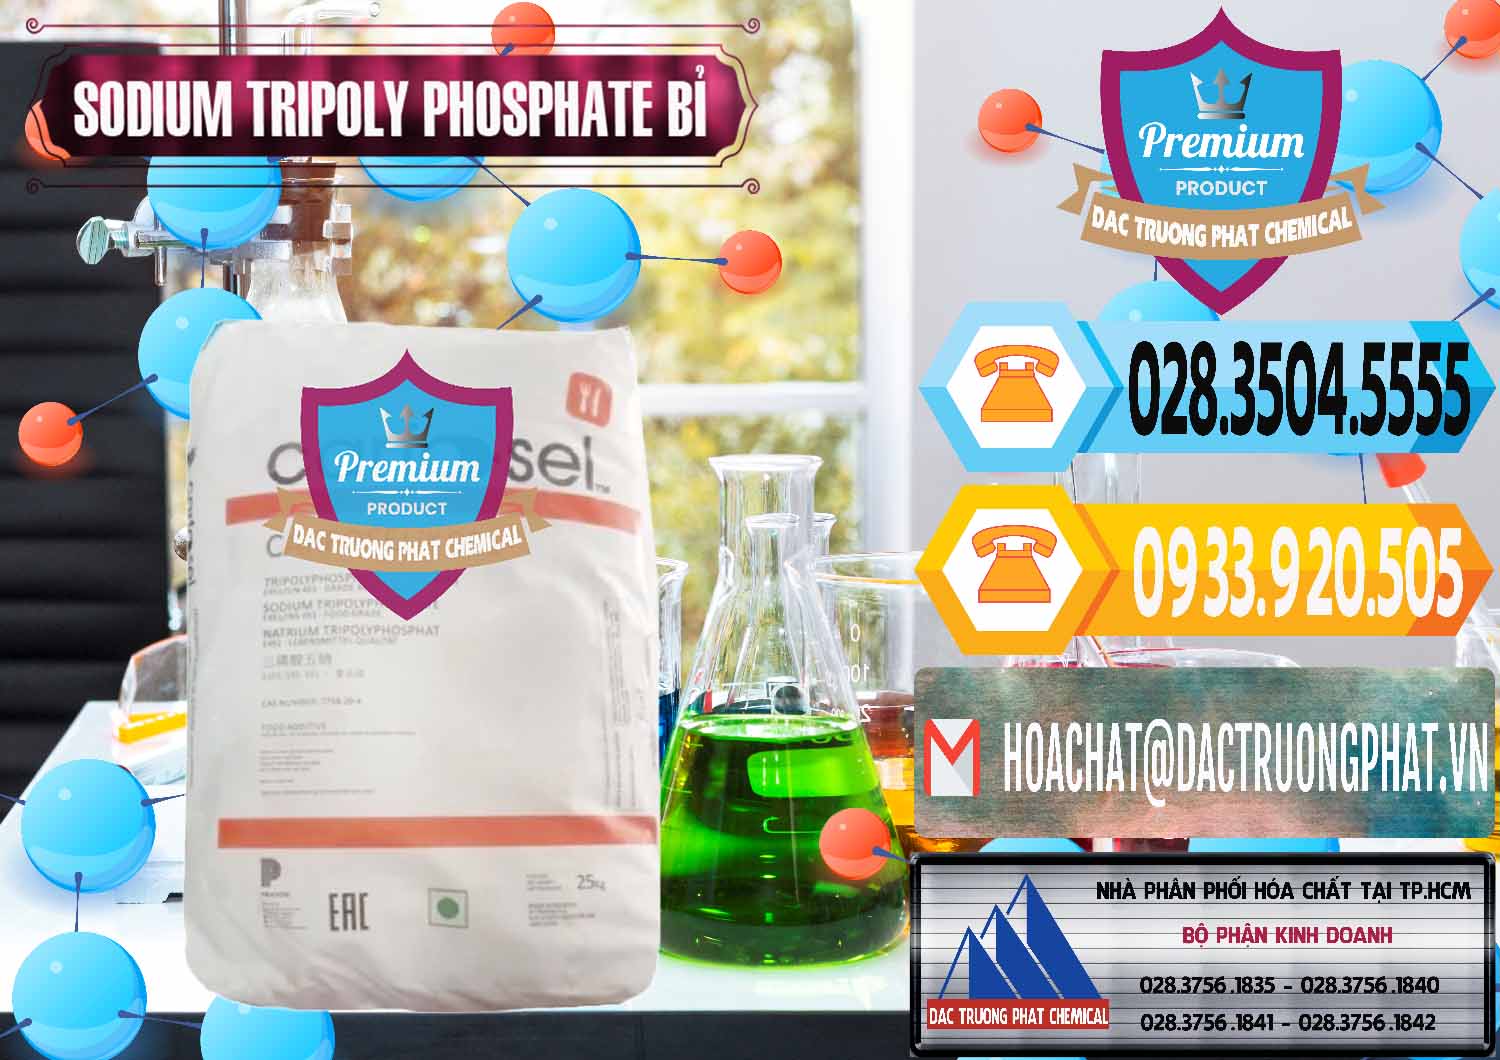 Nơi bán và cung ứng Sodium Tripoly Phosphate - STPP Carfosel 991 Bỉ Belgium - 0429 - Cty chuyên bán _ phân phối hóa chất tại TP.HCM - hoachattayrua.net